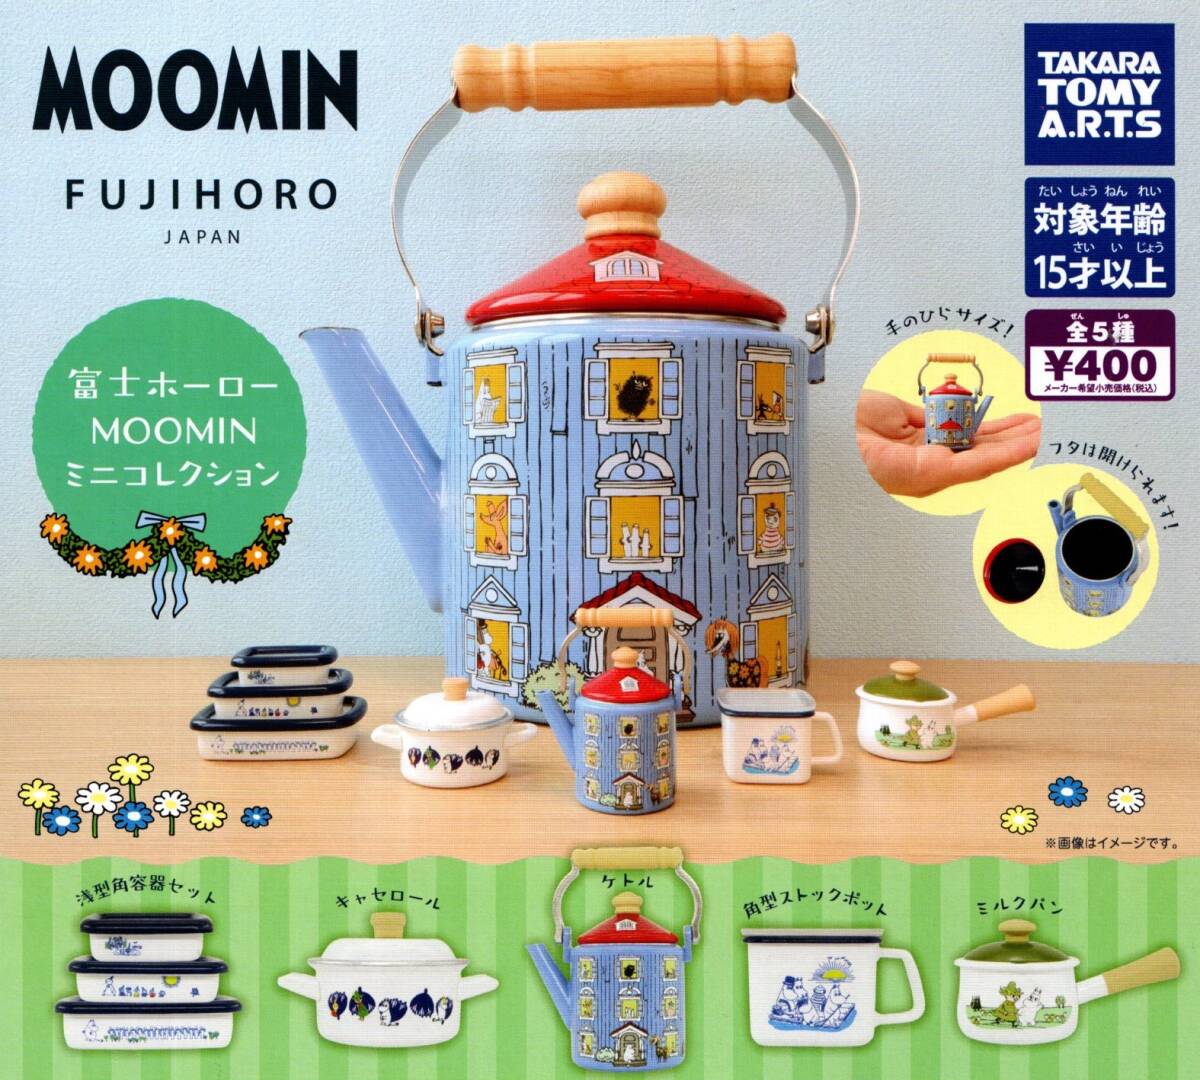 *** стоимость доставки 220 иен ~ Fuji сигнал low Moomin Mini коллекция все 5 вид [ последний ]MOOMIN/FUJIHORO/ Fuji сигнал low / little mii/ga коричневый / Capsule игрушка 